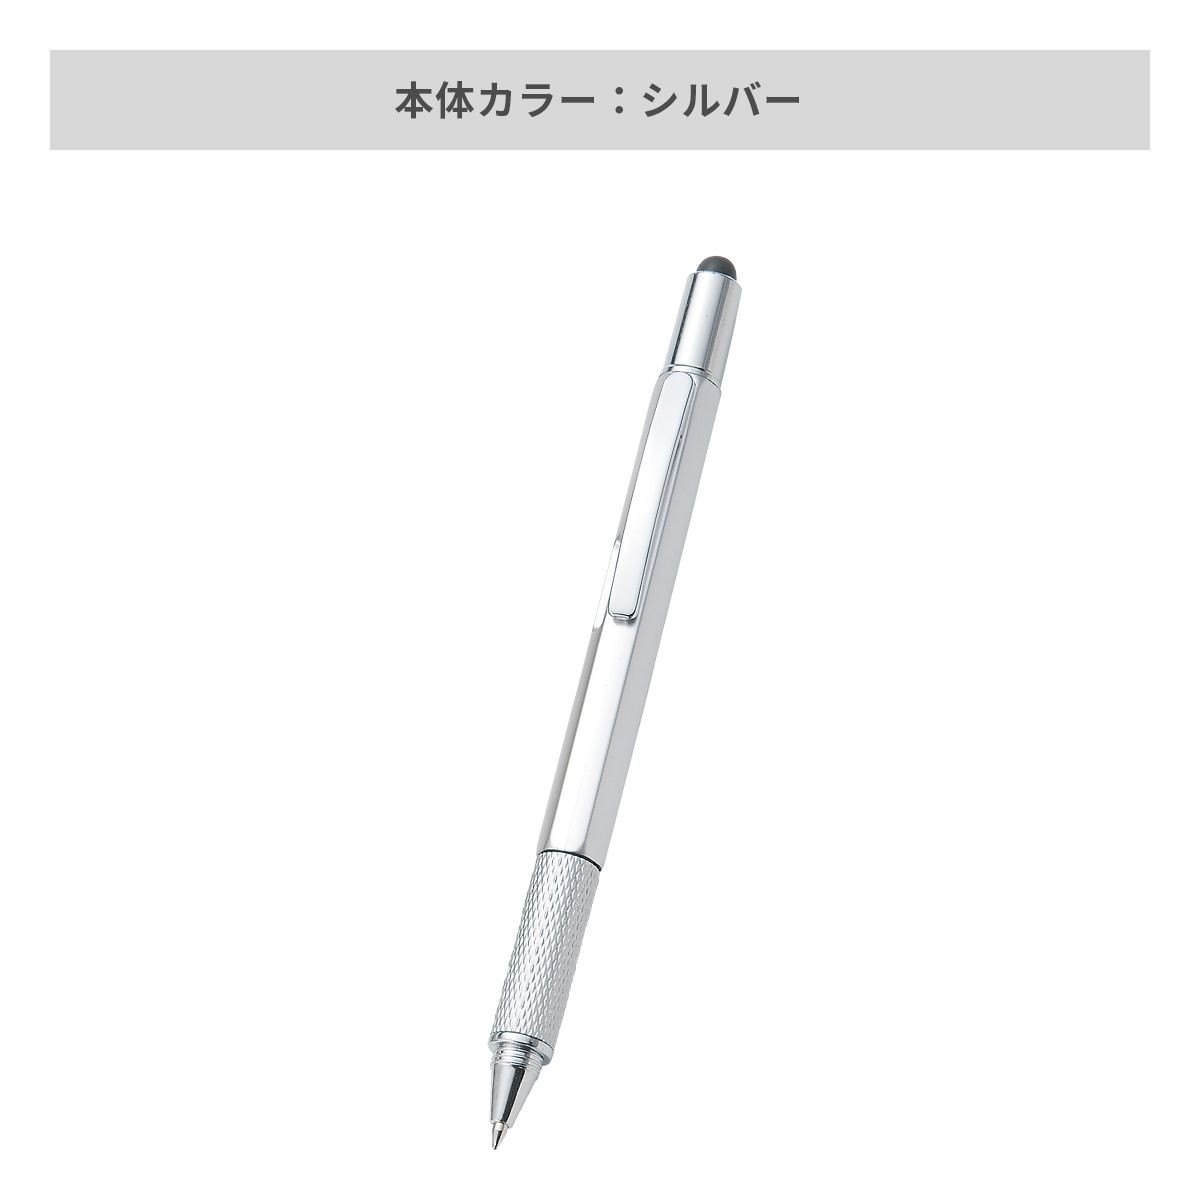 タッチペン付マルチツールペン【多機能ペン / パッド印刷】 画像6